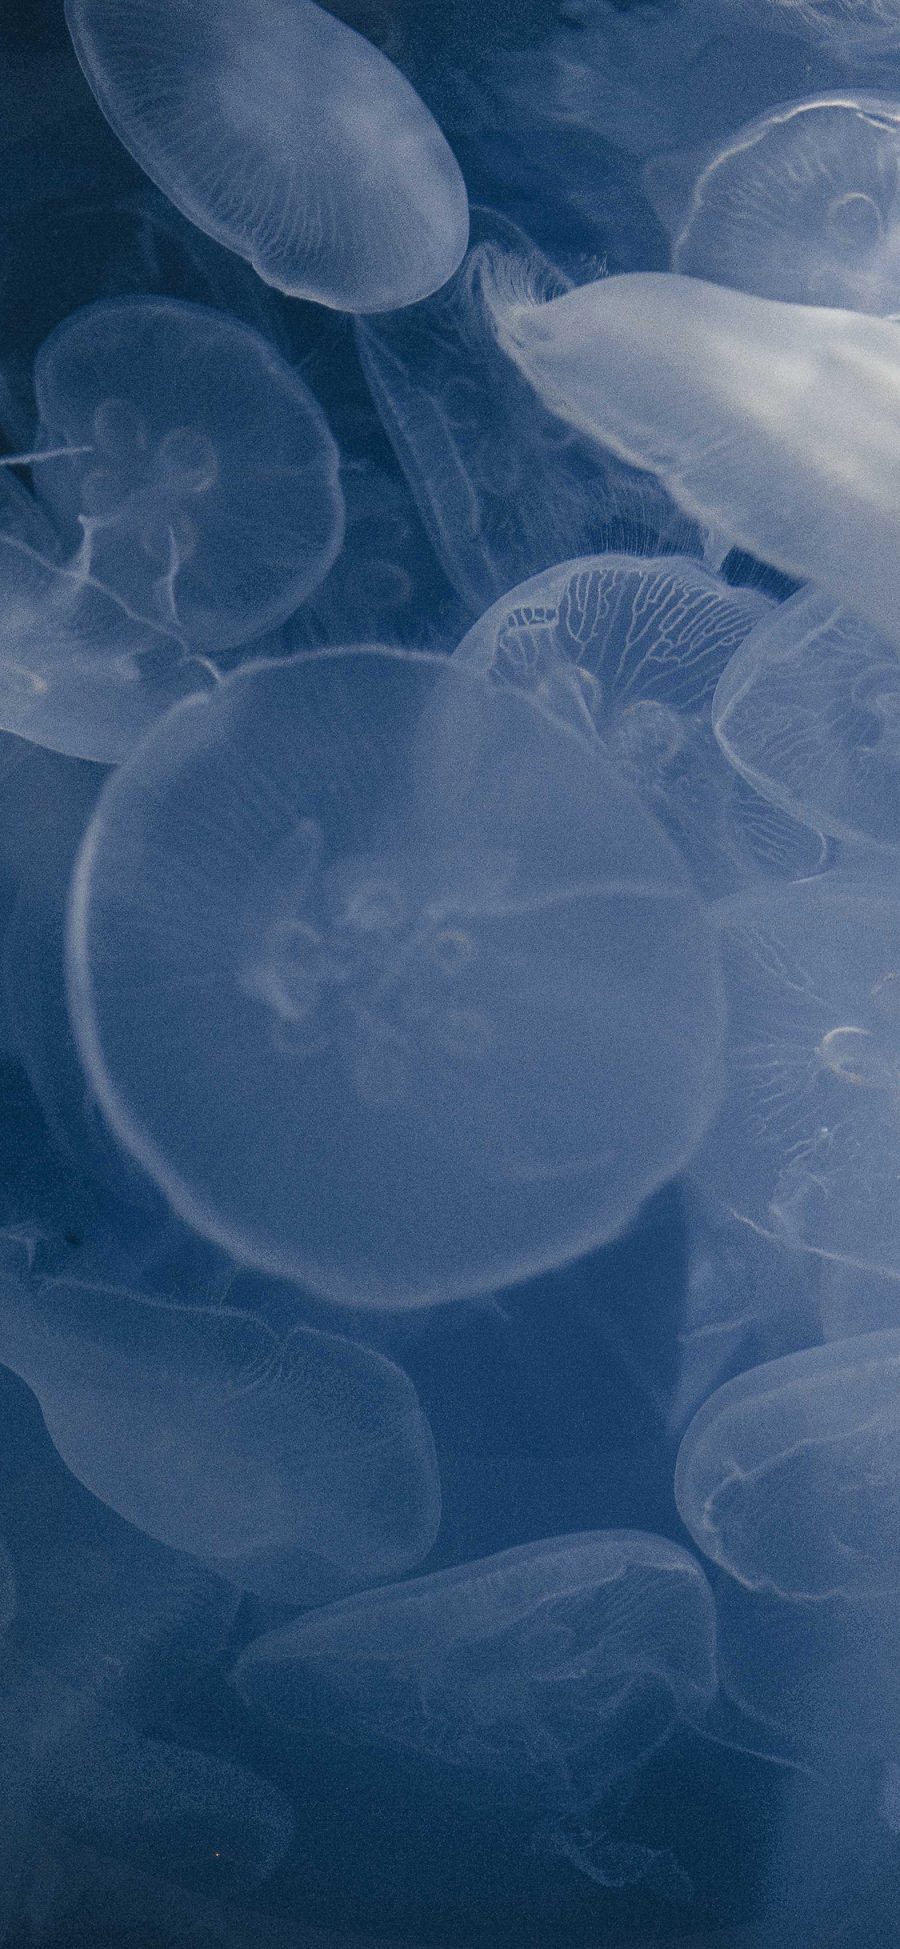 [2436×1125]水母 海洋生物 蓝色 透明 苹果手机壁纸图片